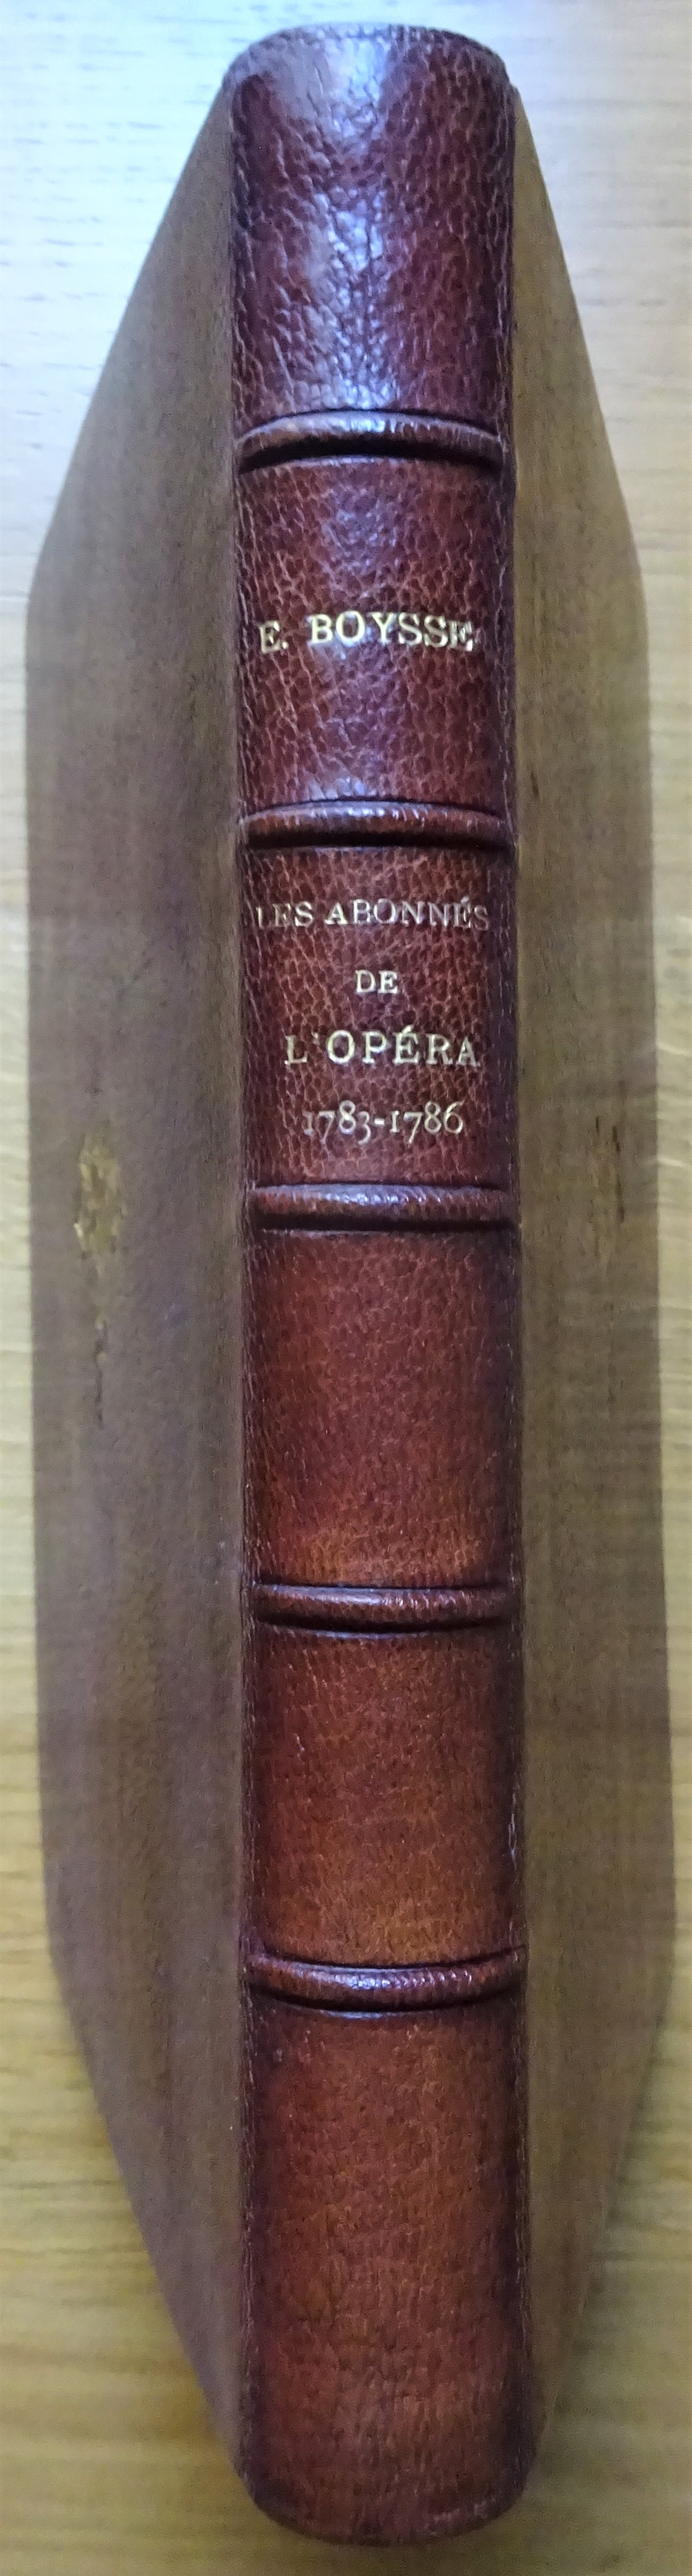 Les abonnés de l'Opéra. (1783-1786)